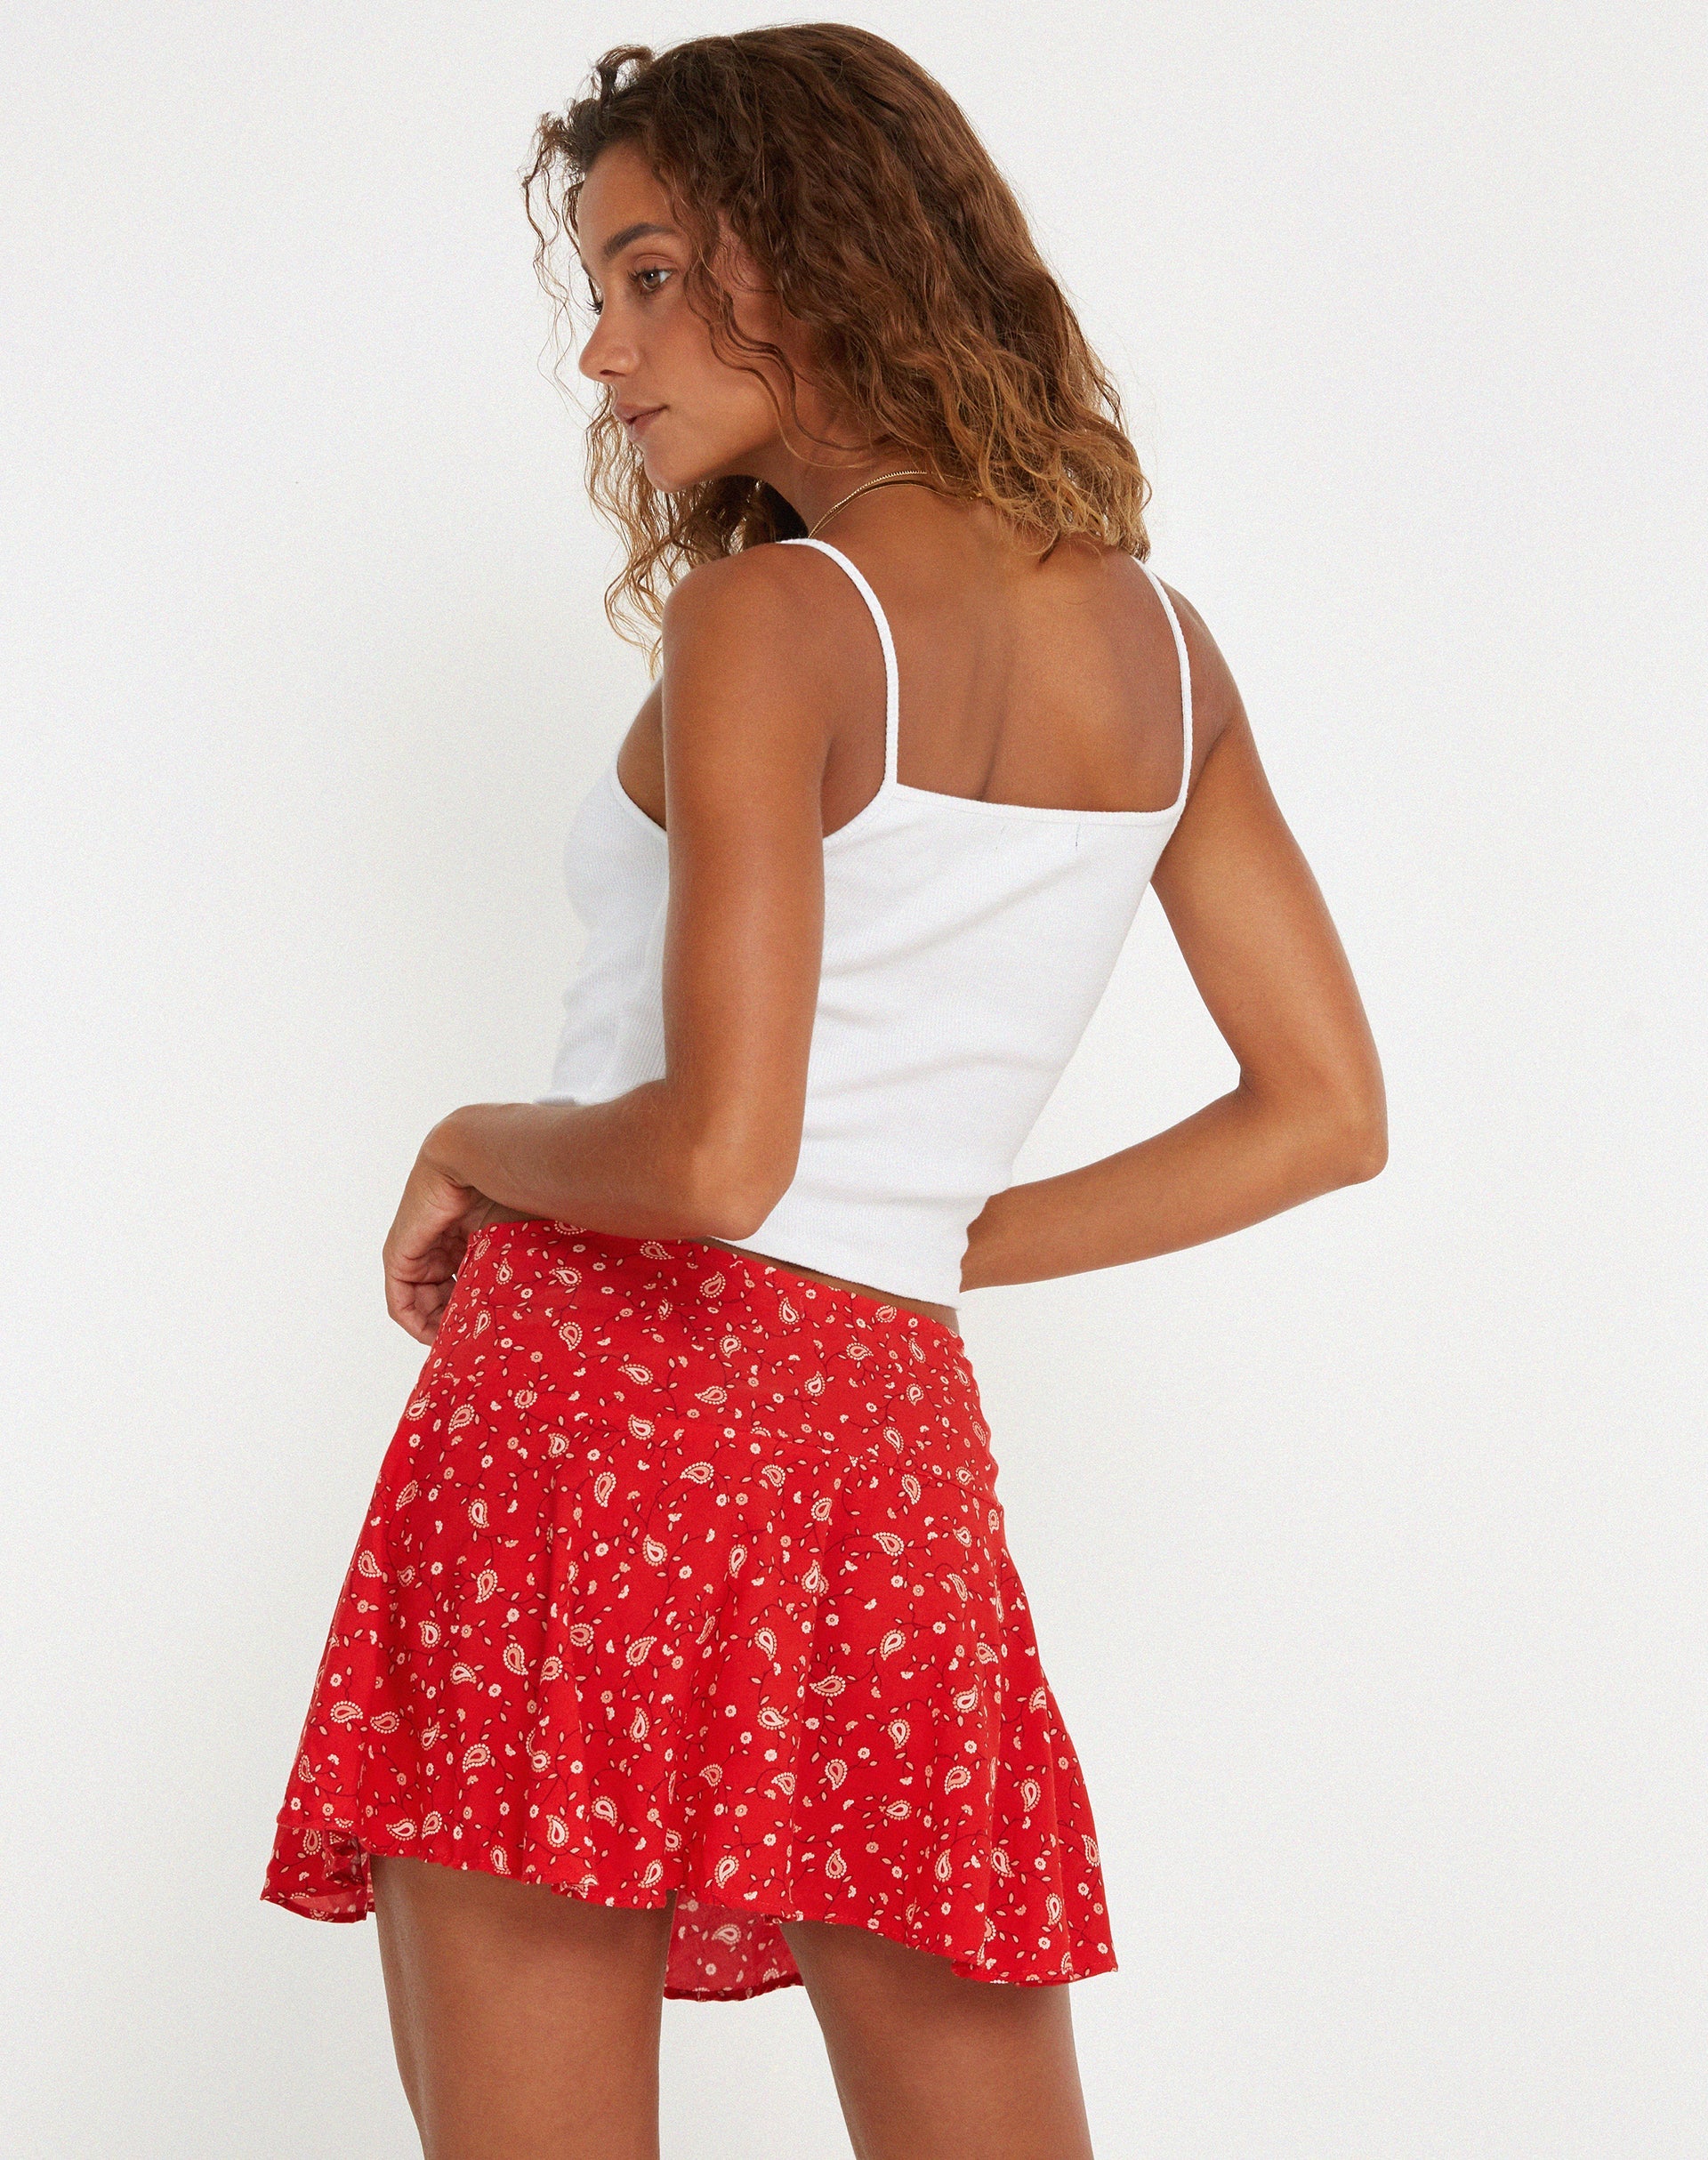 image of Rara Mini Skirt in Paisley Fun Red